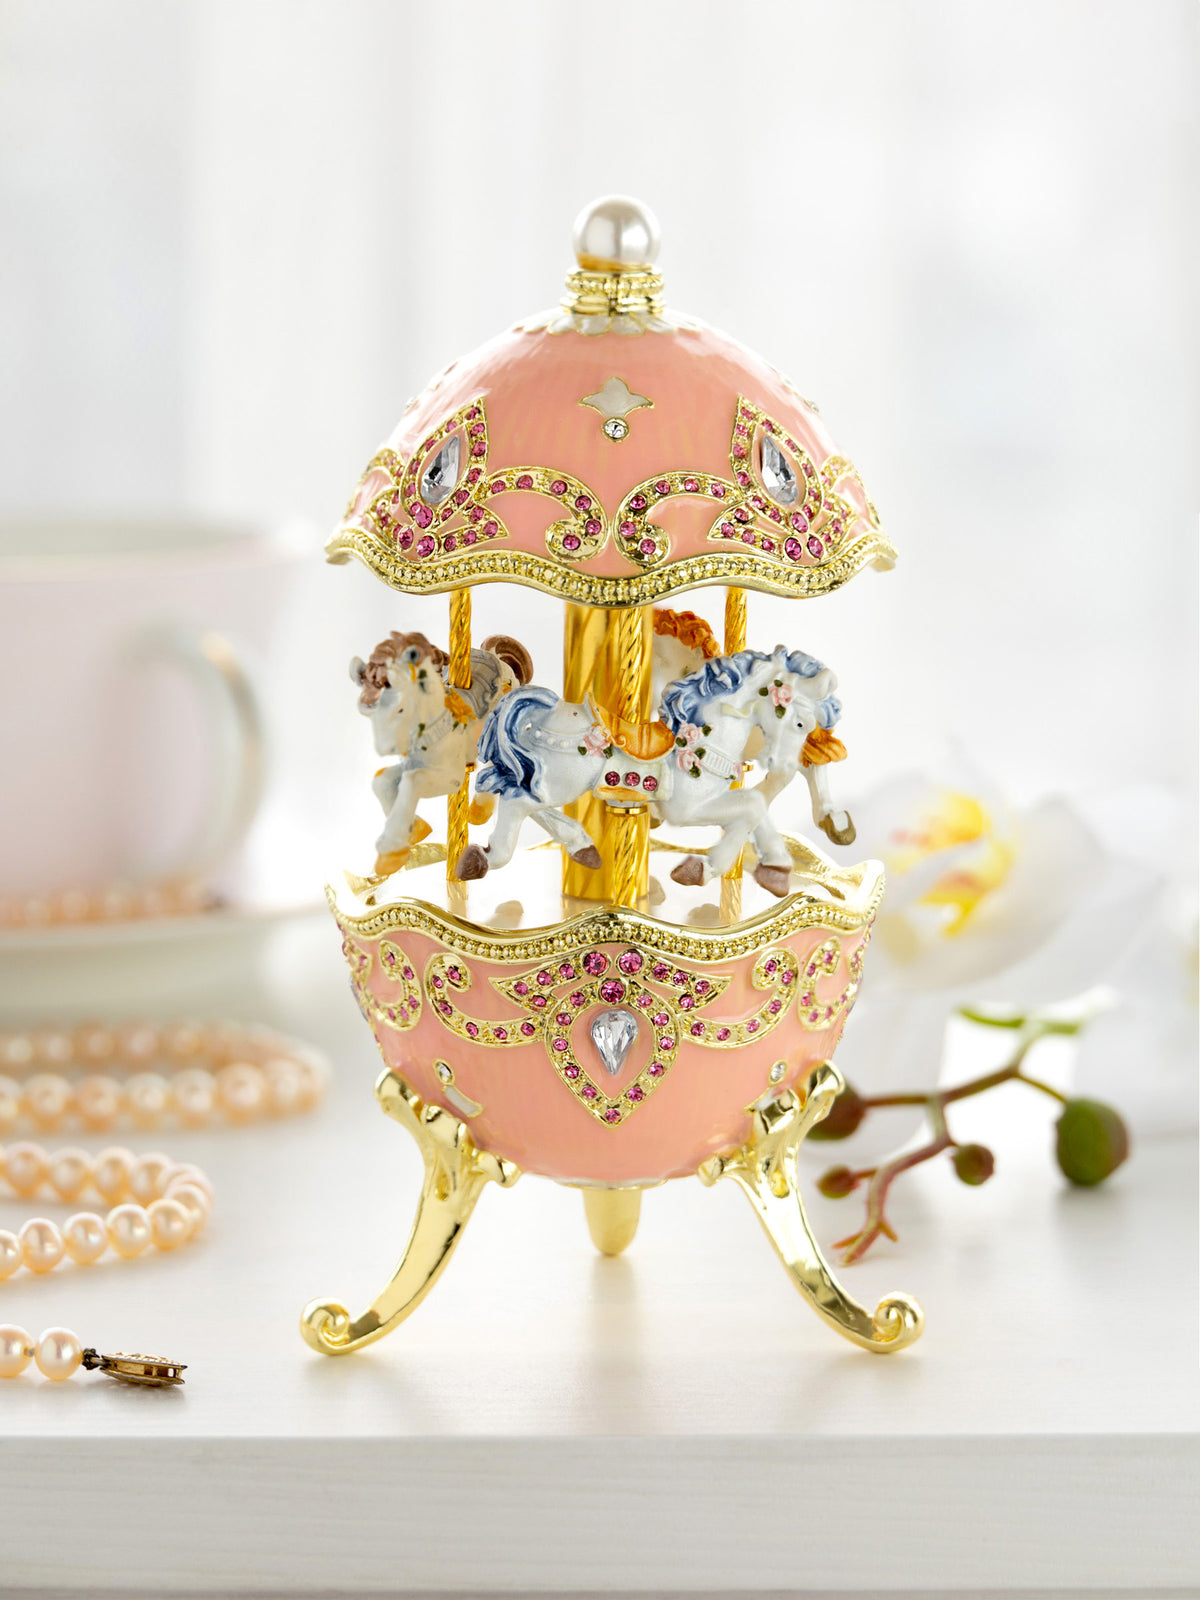 Oeuf de Fabergé rose avec carrousel à chevaux